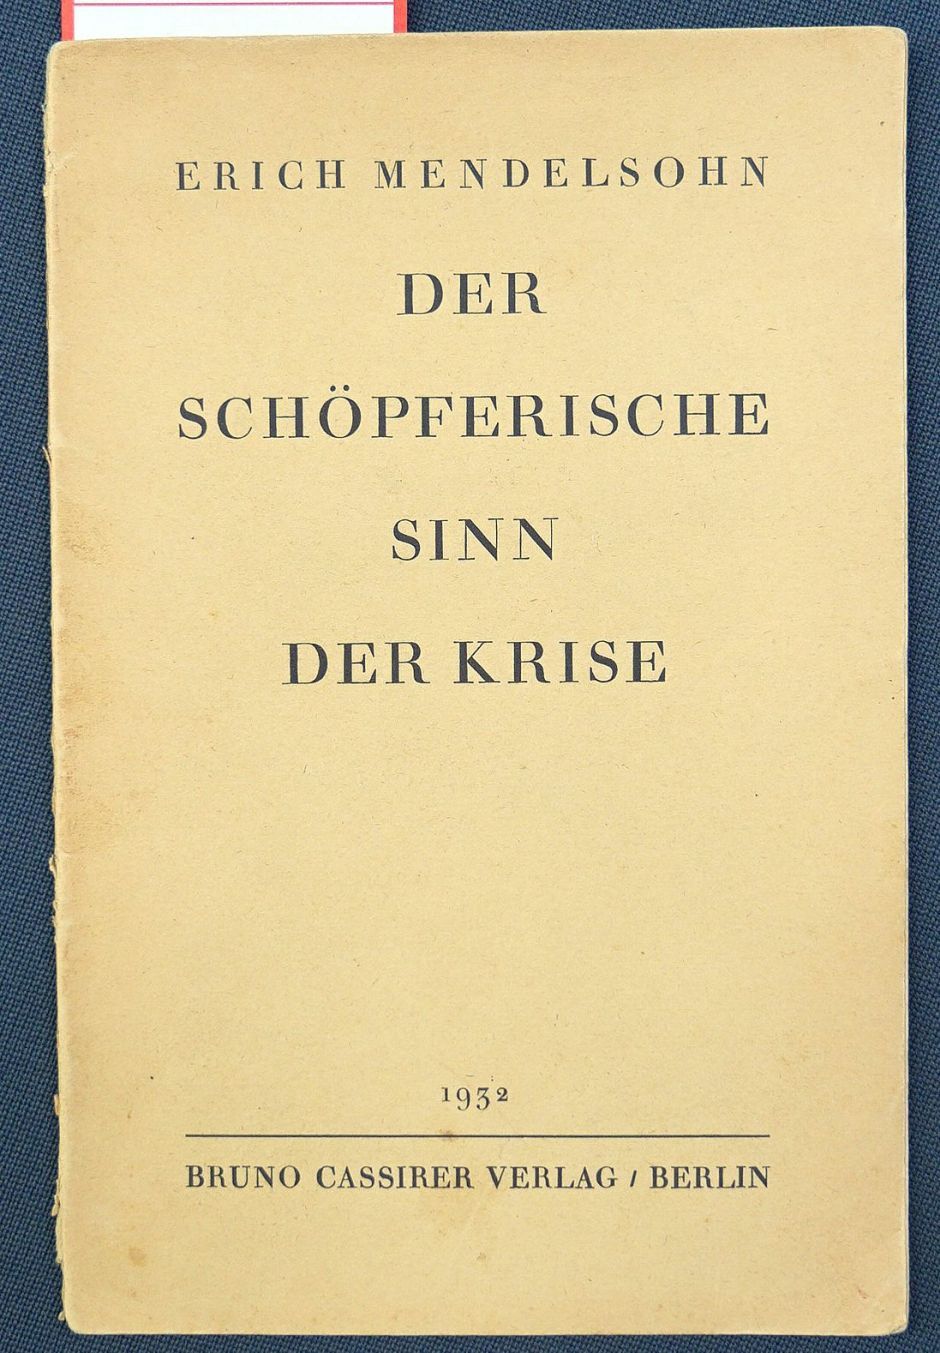 Lot 3482, Auction  115, Mendelsohn, Erich, Der schöpferische Sinn der Krise